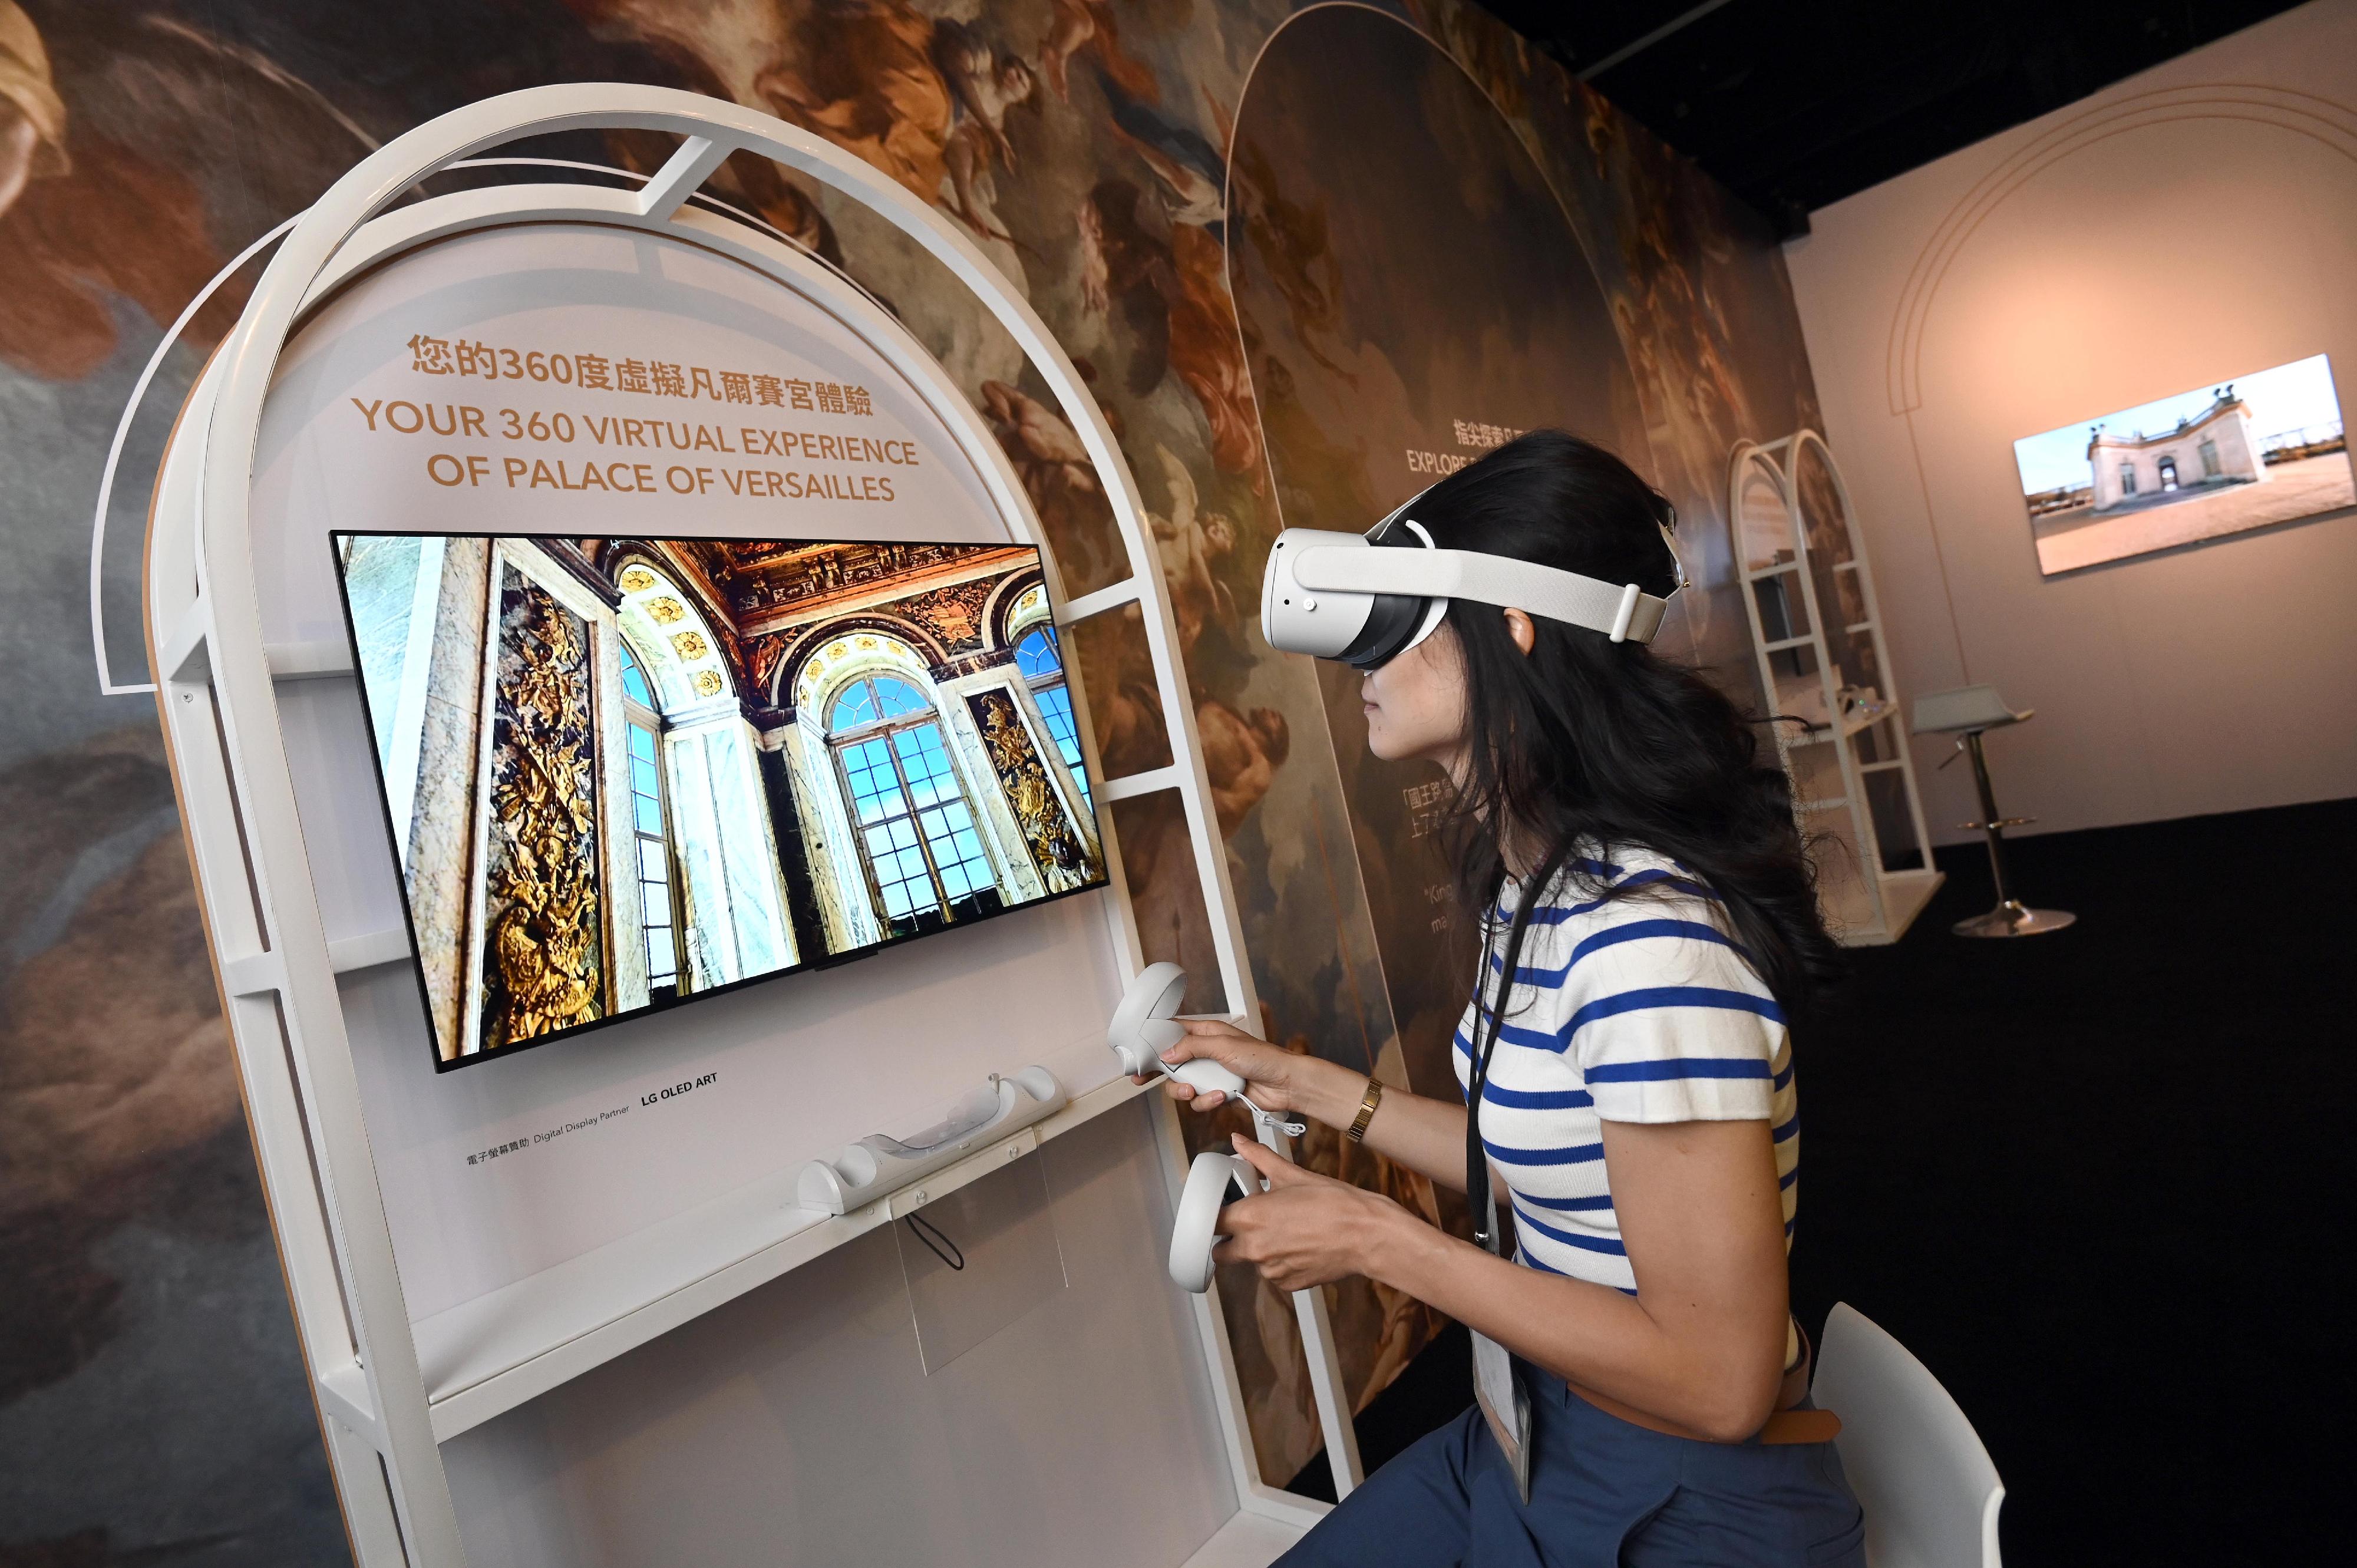 「虚拟凡尔赛宫之旅」展览开幕典礼今日（四月十九日）在香港文化博物馆举行。图示「凡尔赛宫3D画廊」，透过虚拟实境技术，带领观众走进凡尔赛宫，细赏宫中精选建筑的陈设装饰和建筑特色。